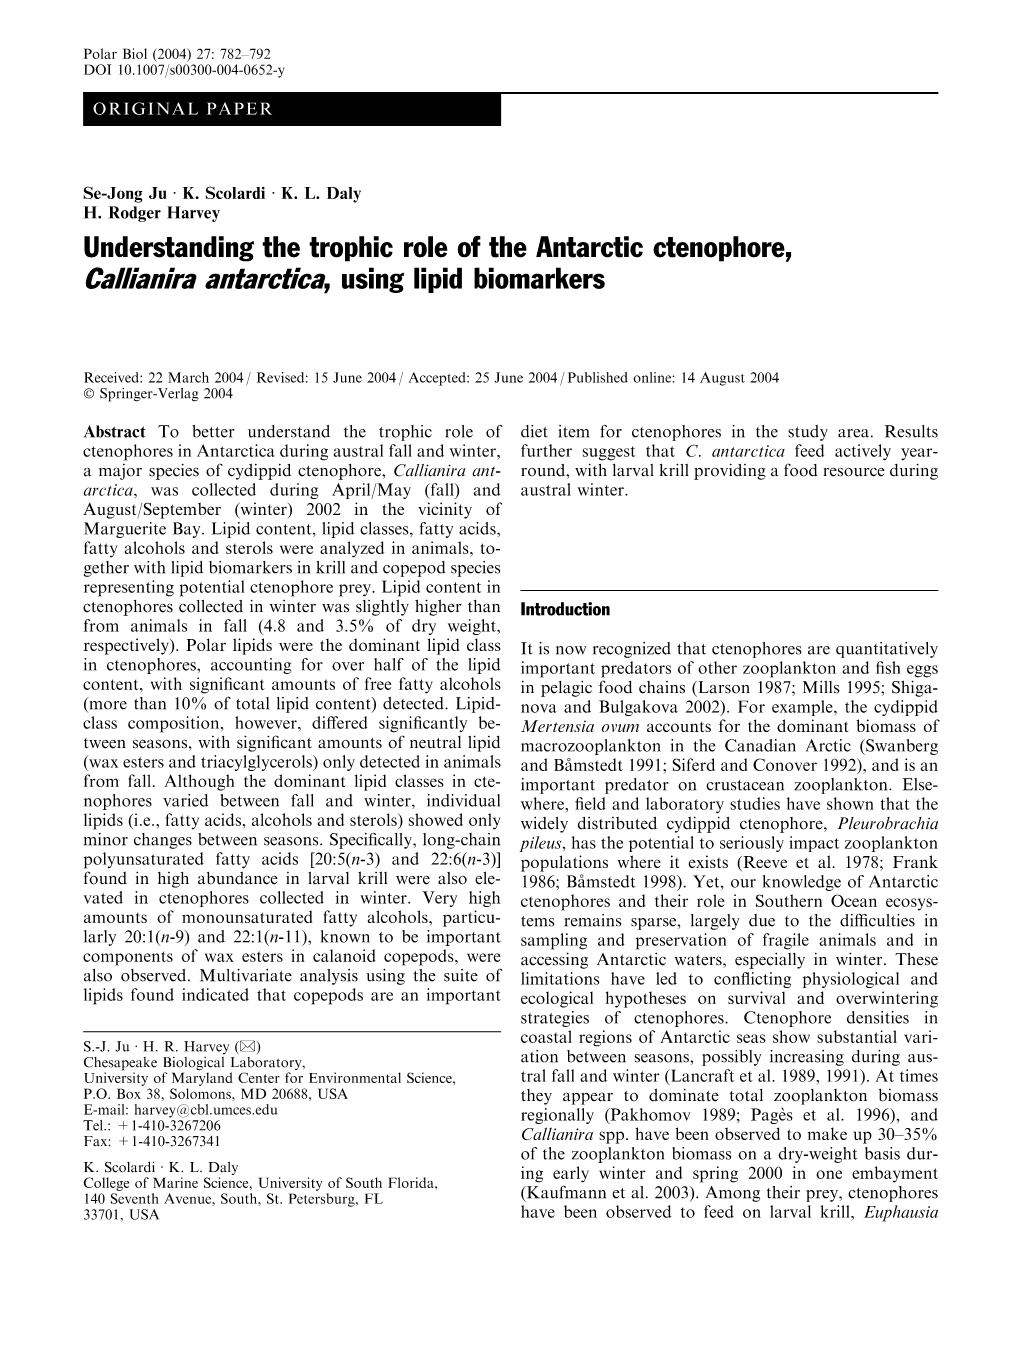 Understanding the Trophic Role of the Antarctic Ctenophore, Callianira Antarctica, Using Lipid Biomarkers